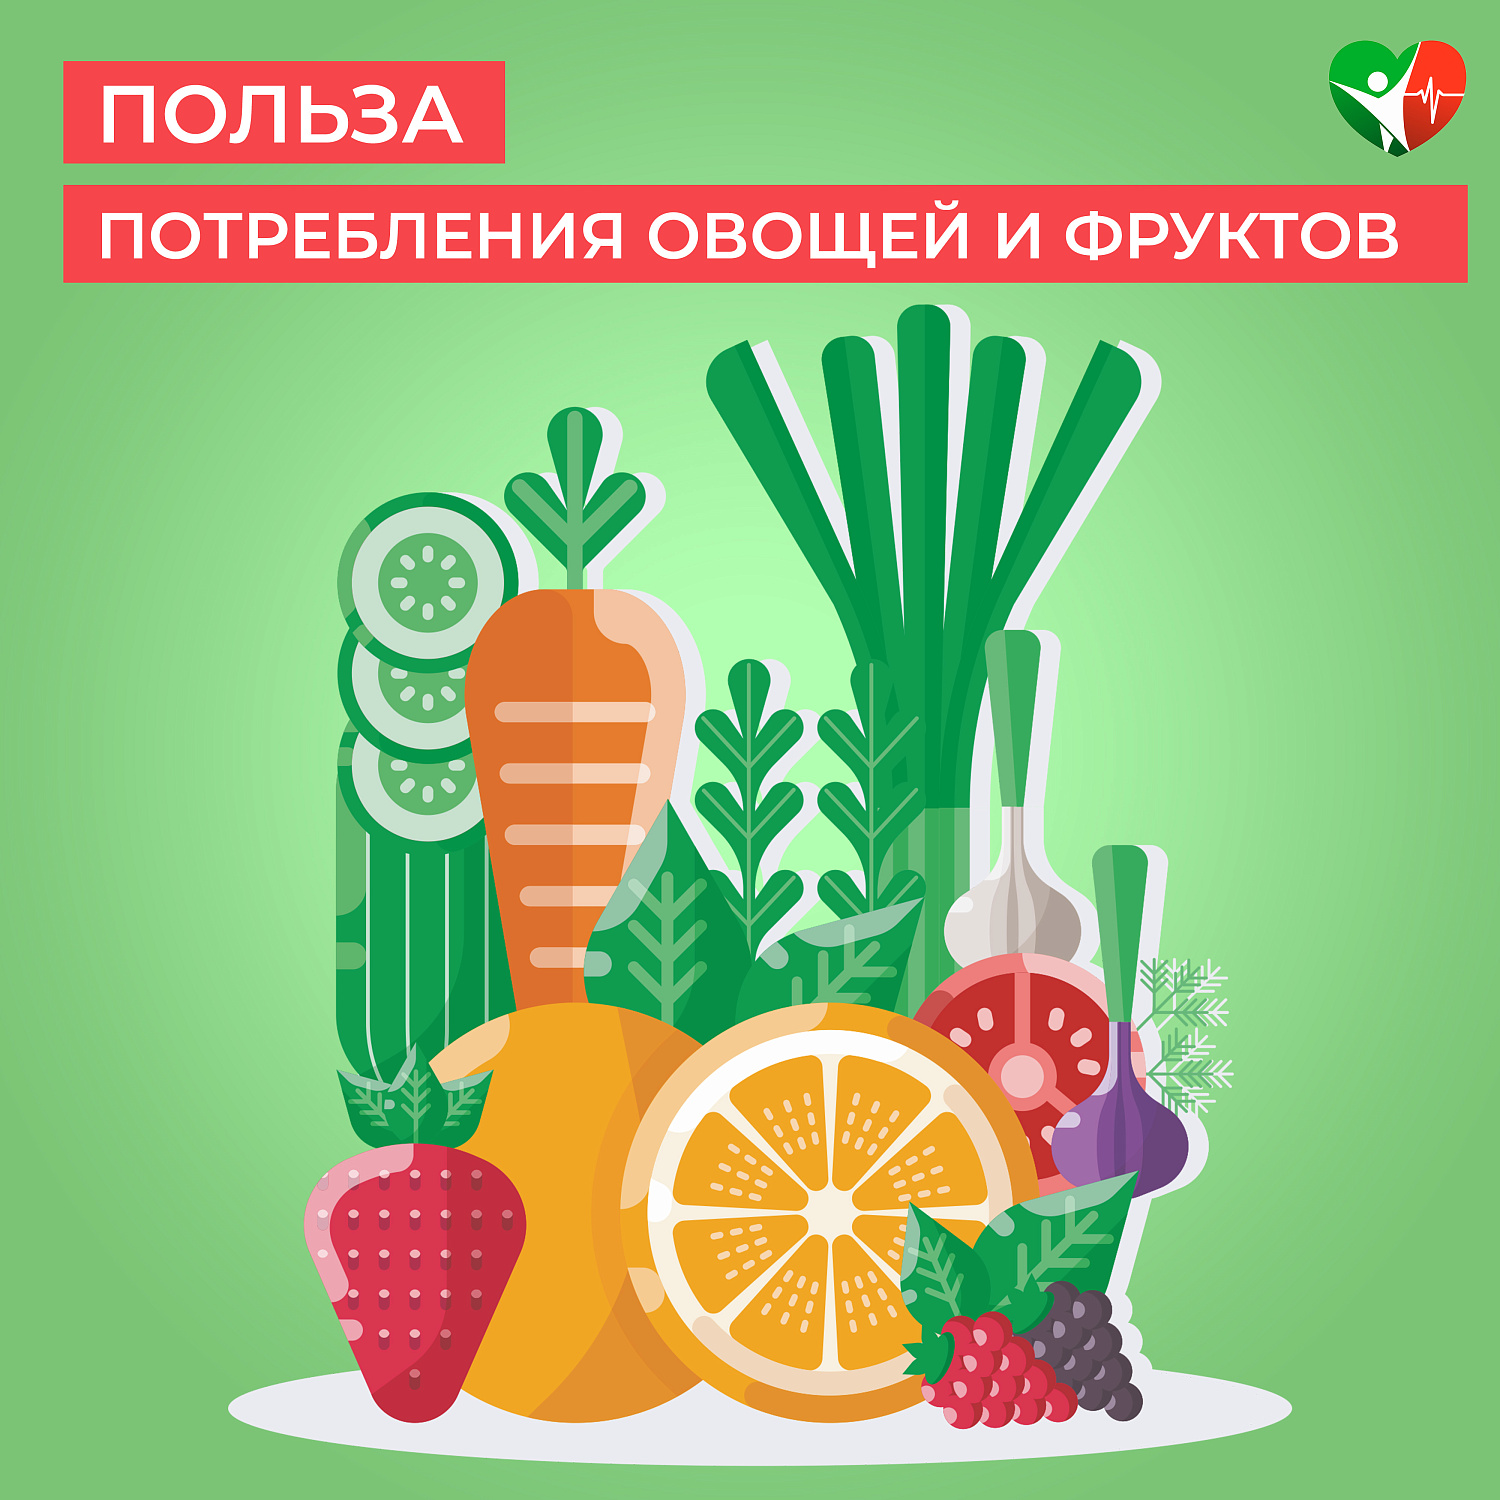 Польза потребления овощей и фруктов